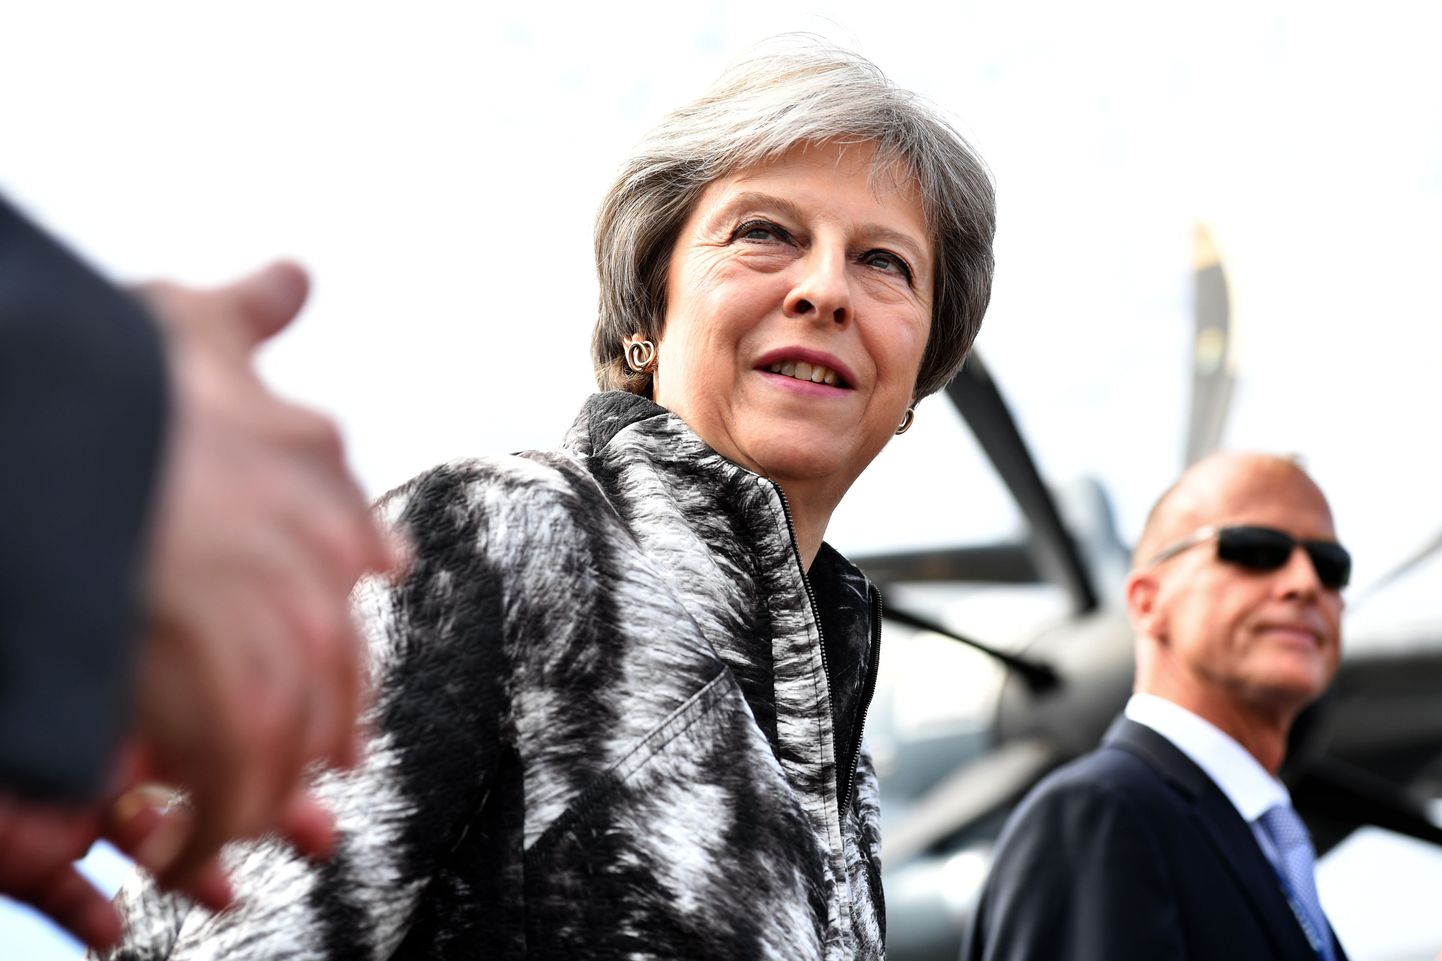 Briti peaminister Theresa May täna Farnborough lennunduspäeval, kus ta avalikustas plaani uue hävitaja ehitamisest.